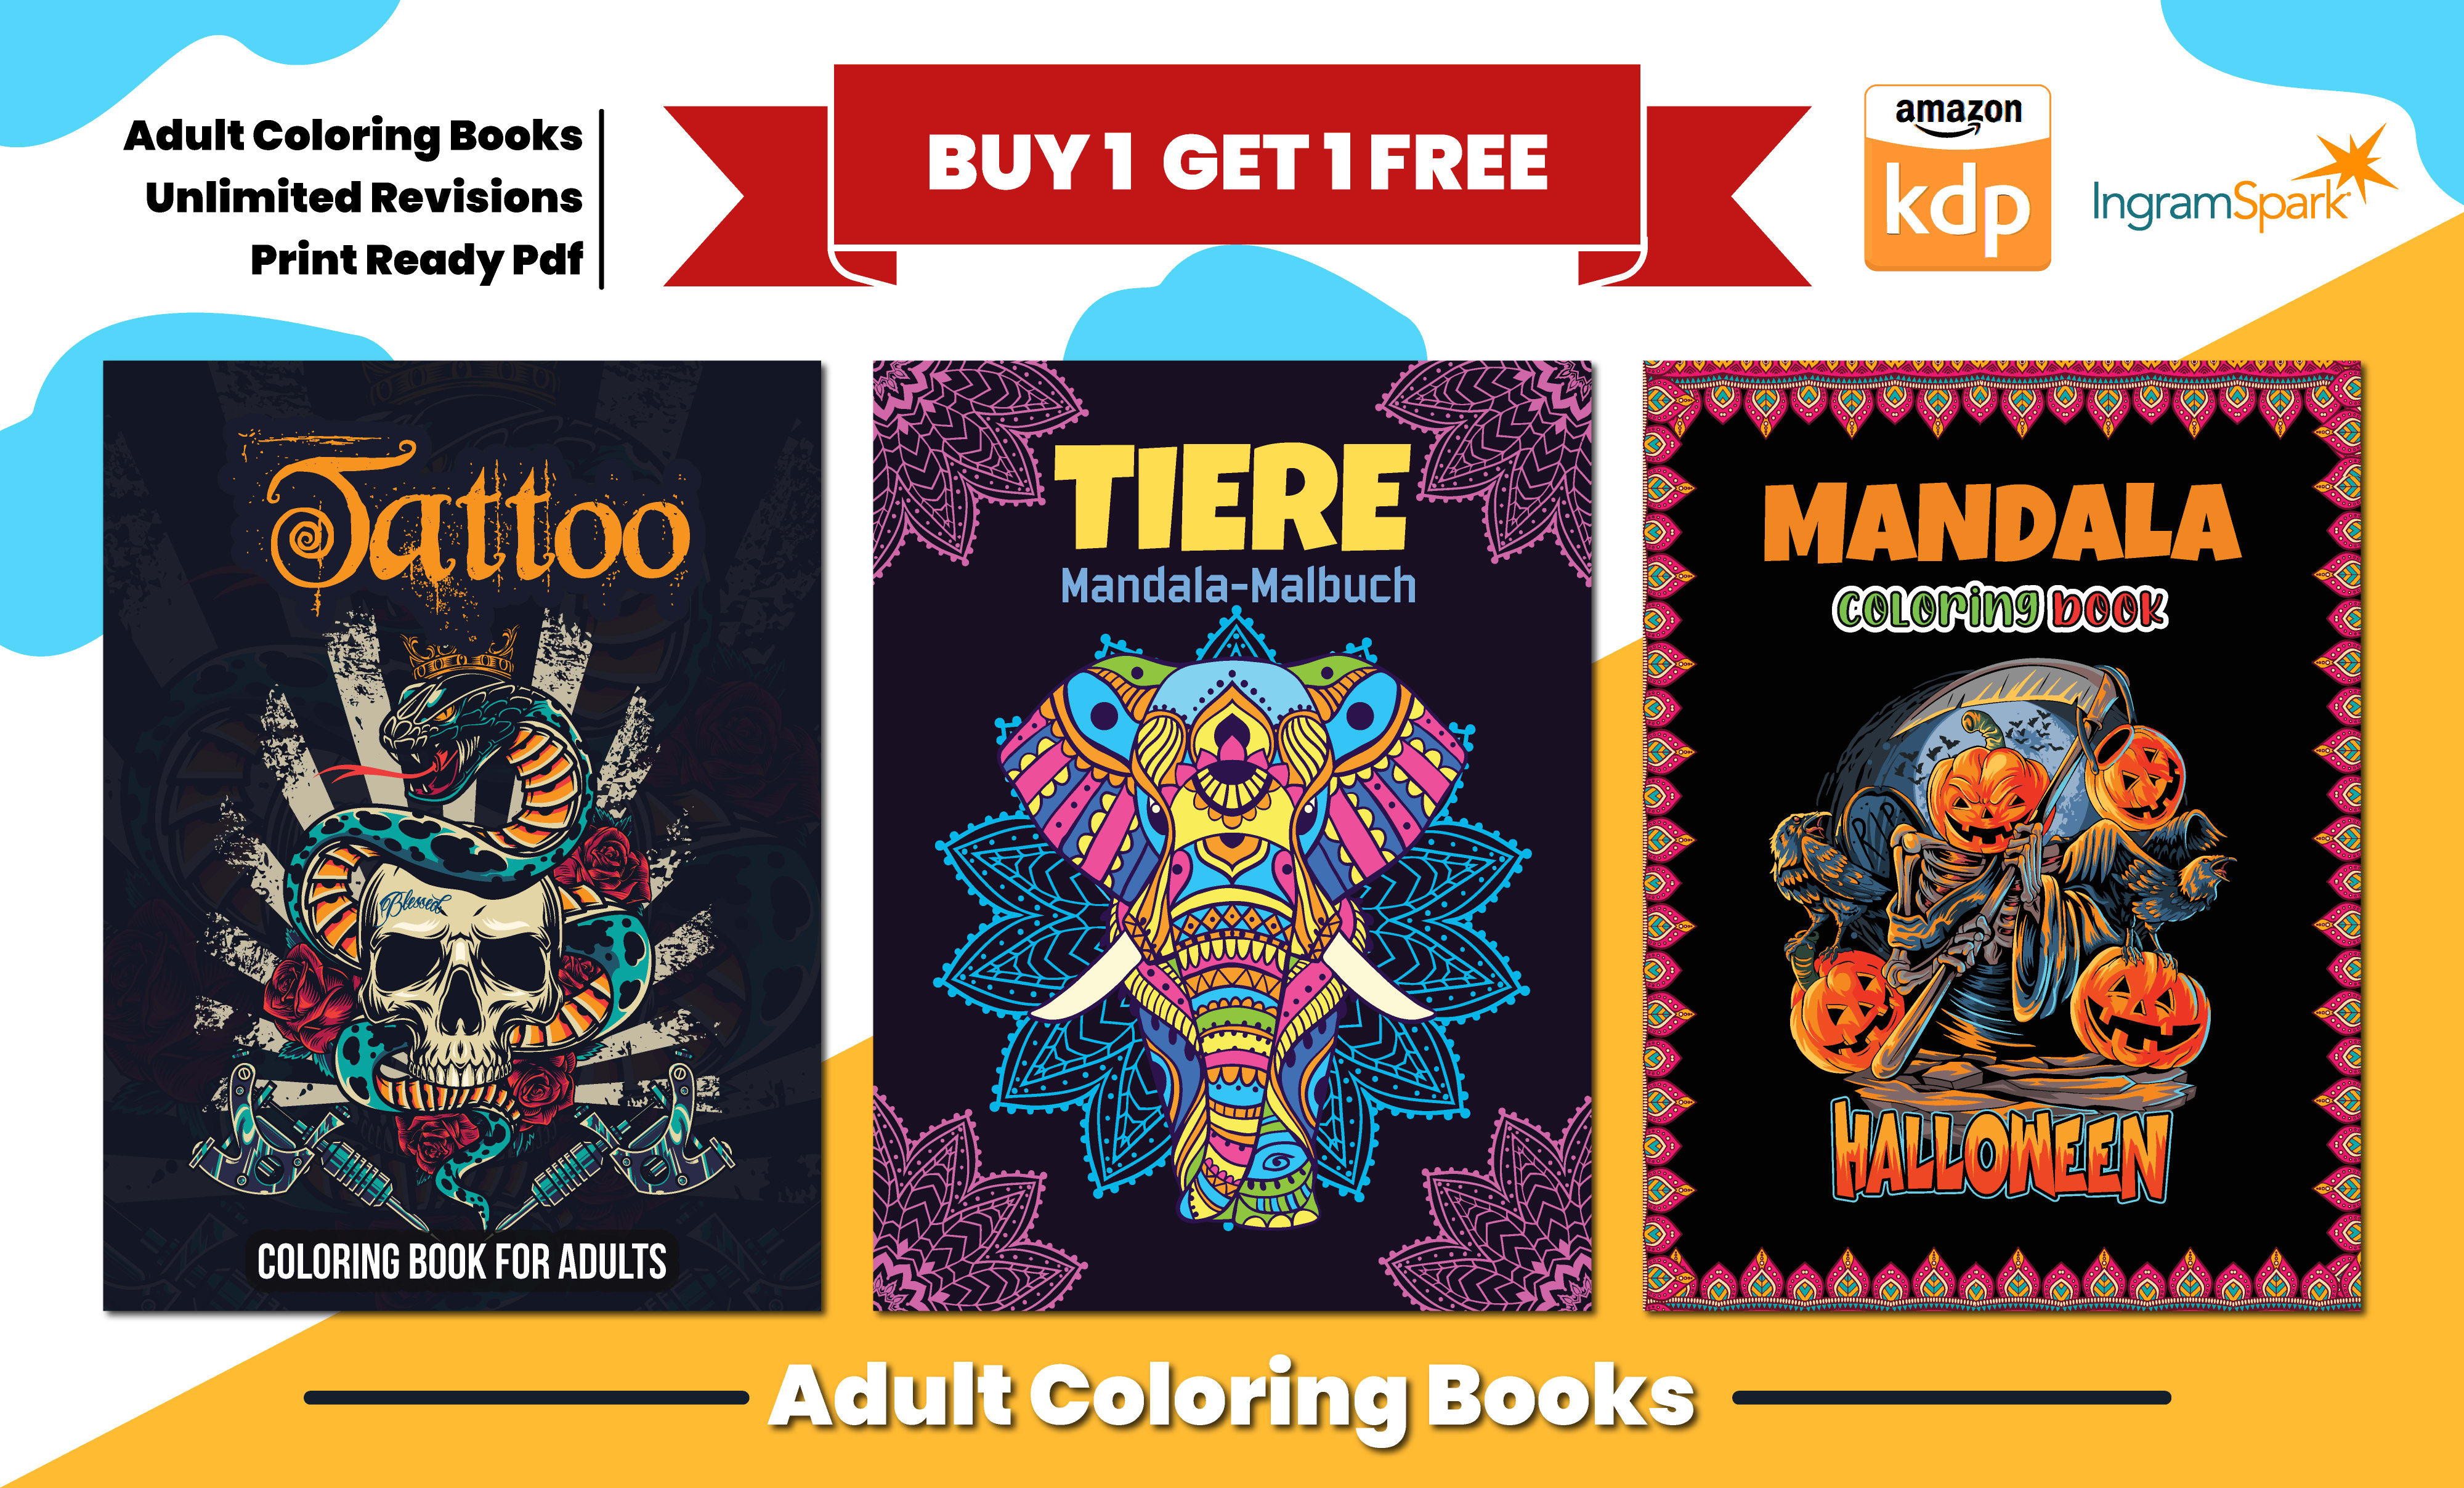 Carnet de coloriage Mandalas pour adultes: une activité créative